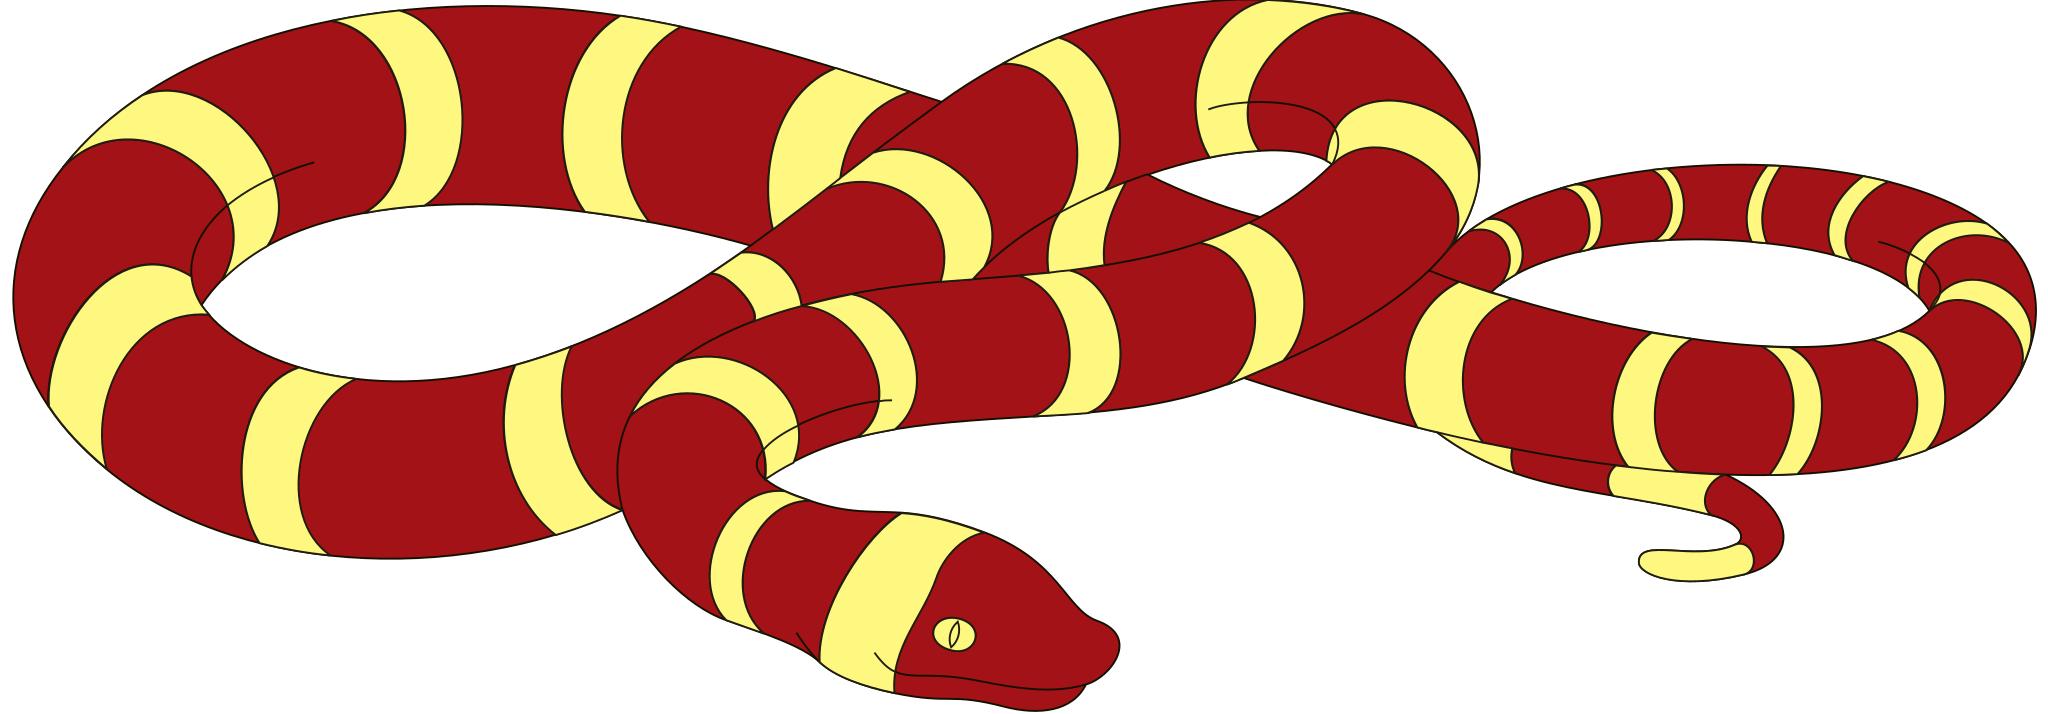 Змея рисунок для детей